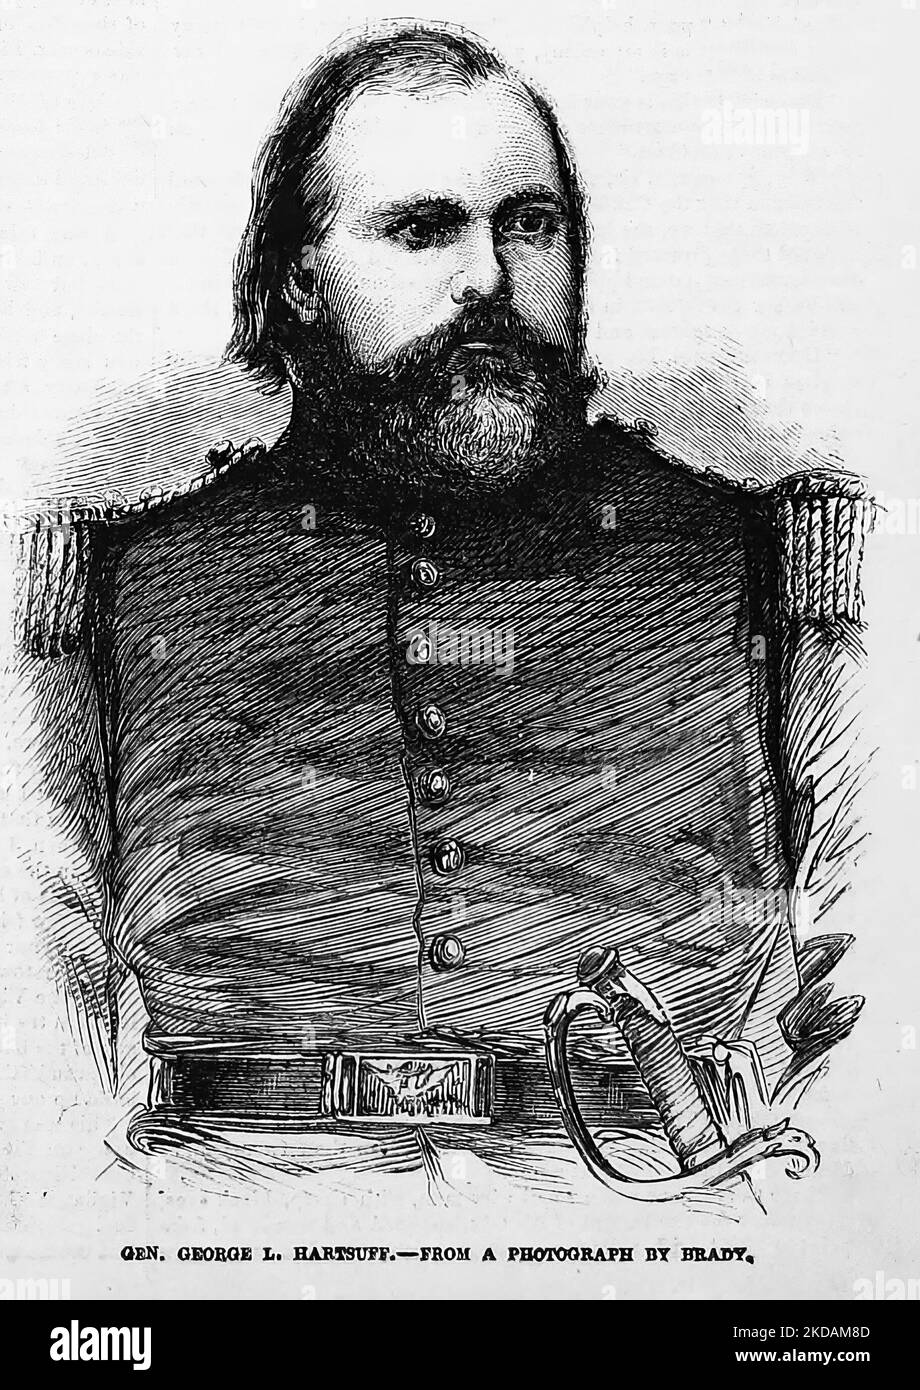 Ritratto del generale George Lucas Hartsuff. 1862. Illustrazione della guerra civile americana del 19th° secolo dal quotidiano illustrato di Frank Leslie Foto Stock